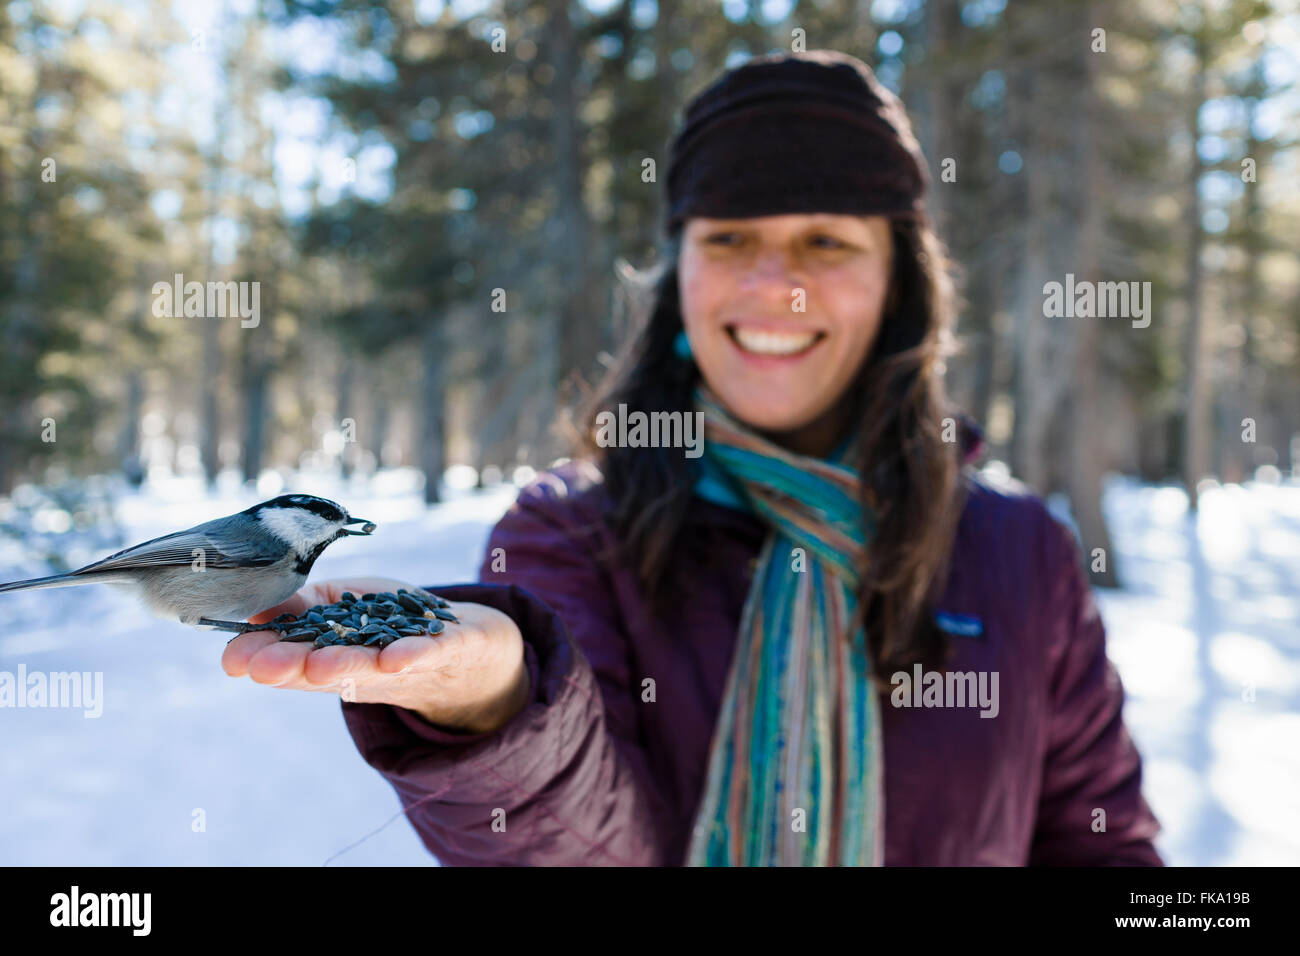 Carbonero aves silvestres comer fuera de las manos de la mujer elegante en entorno de bosque nevado Foto de stock